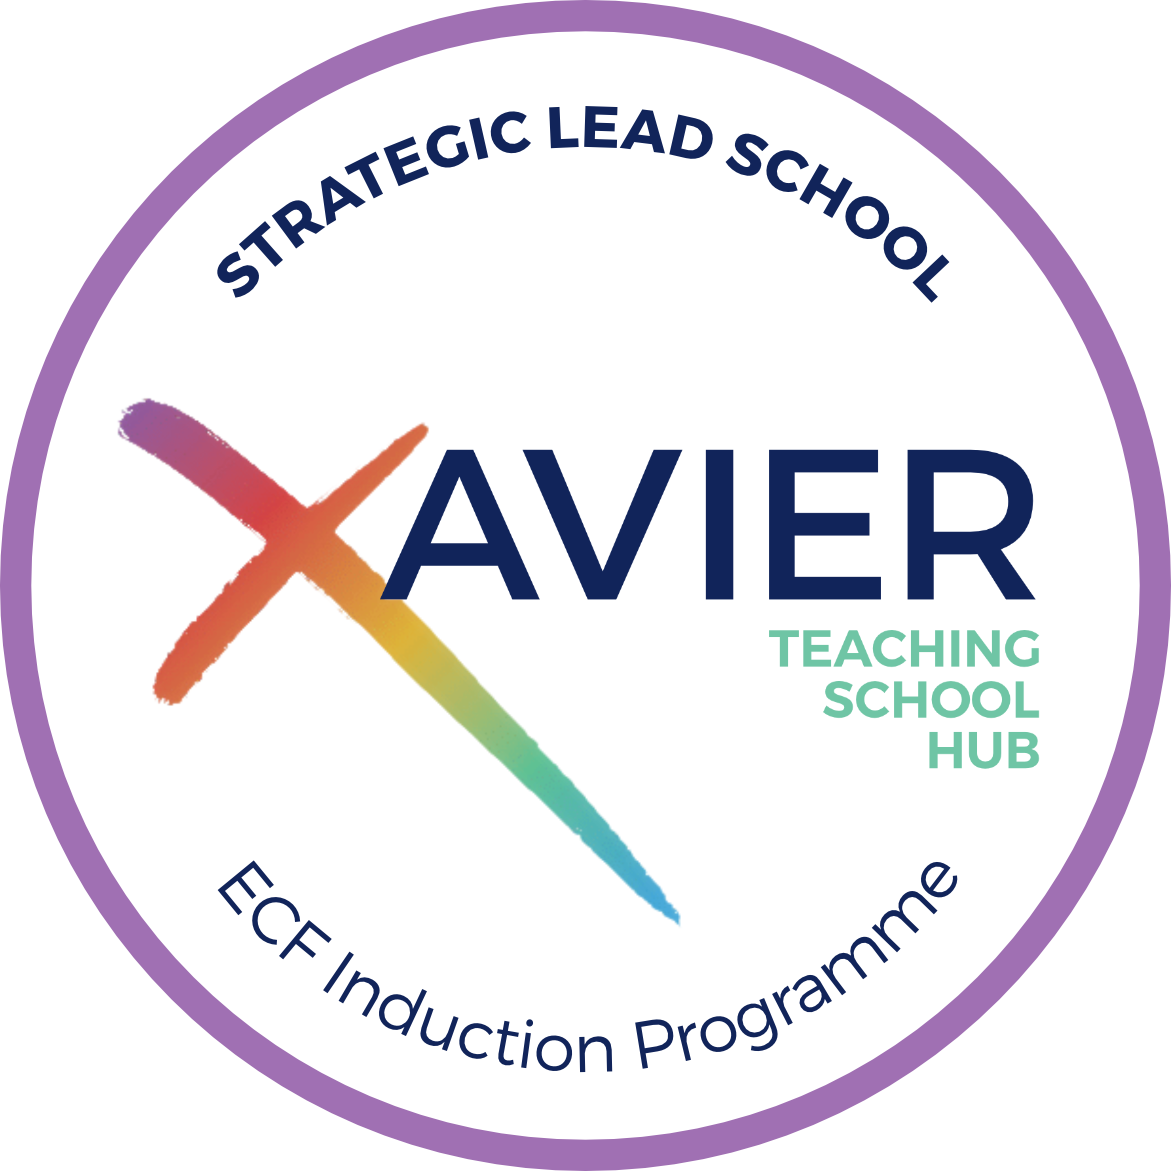 Xavier TSH Strategic Lead School